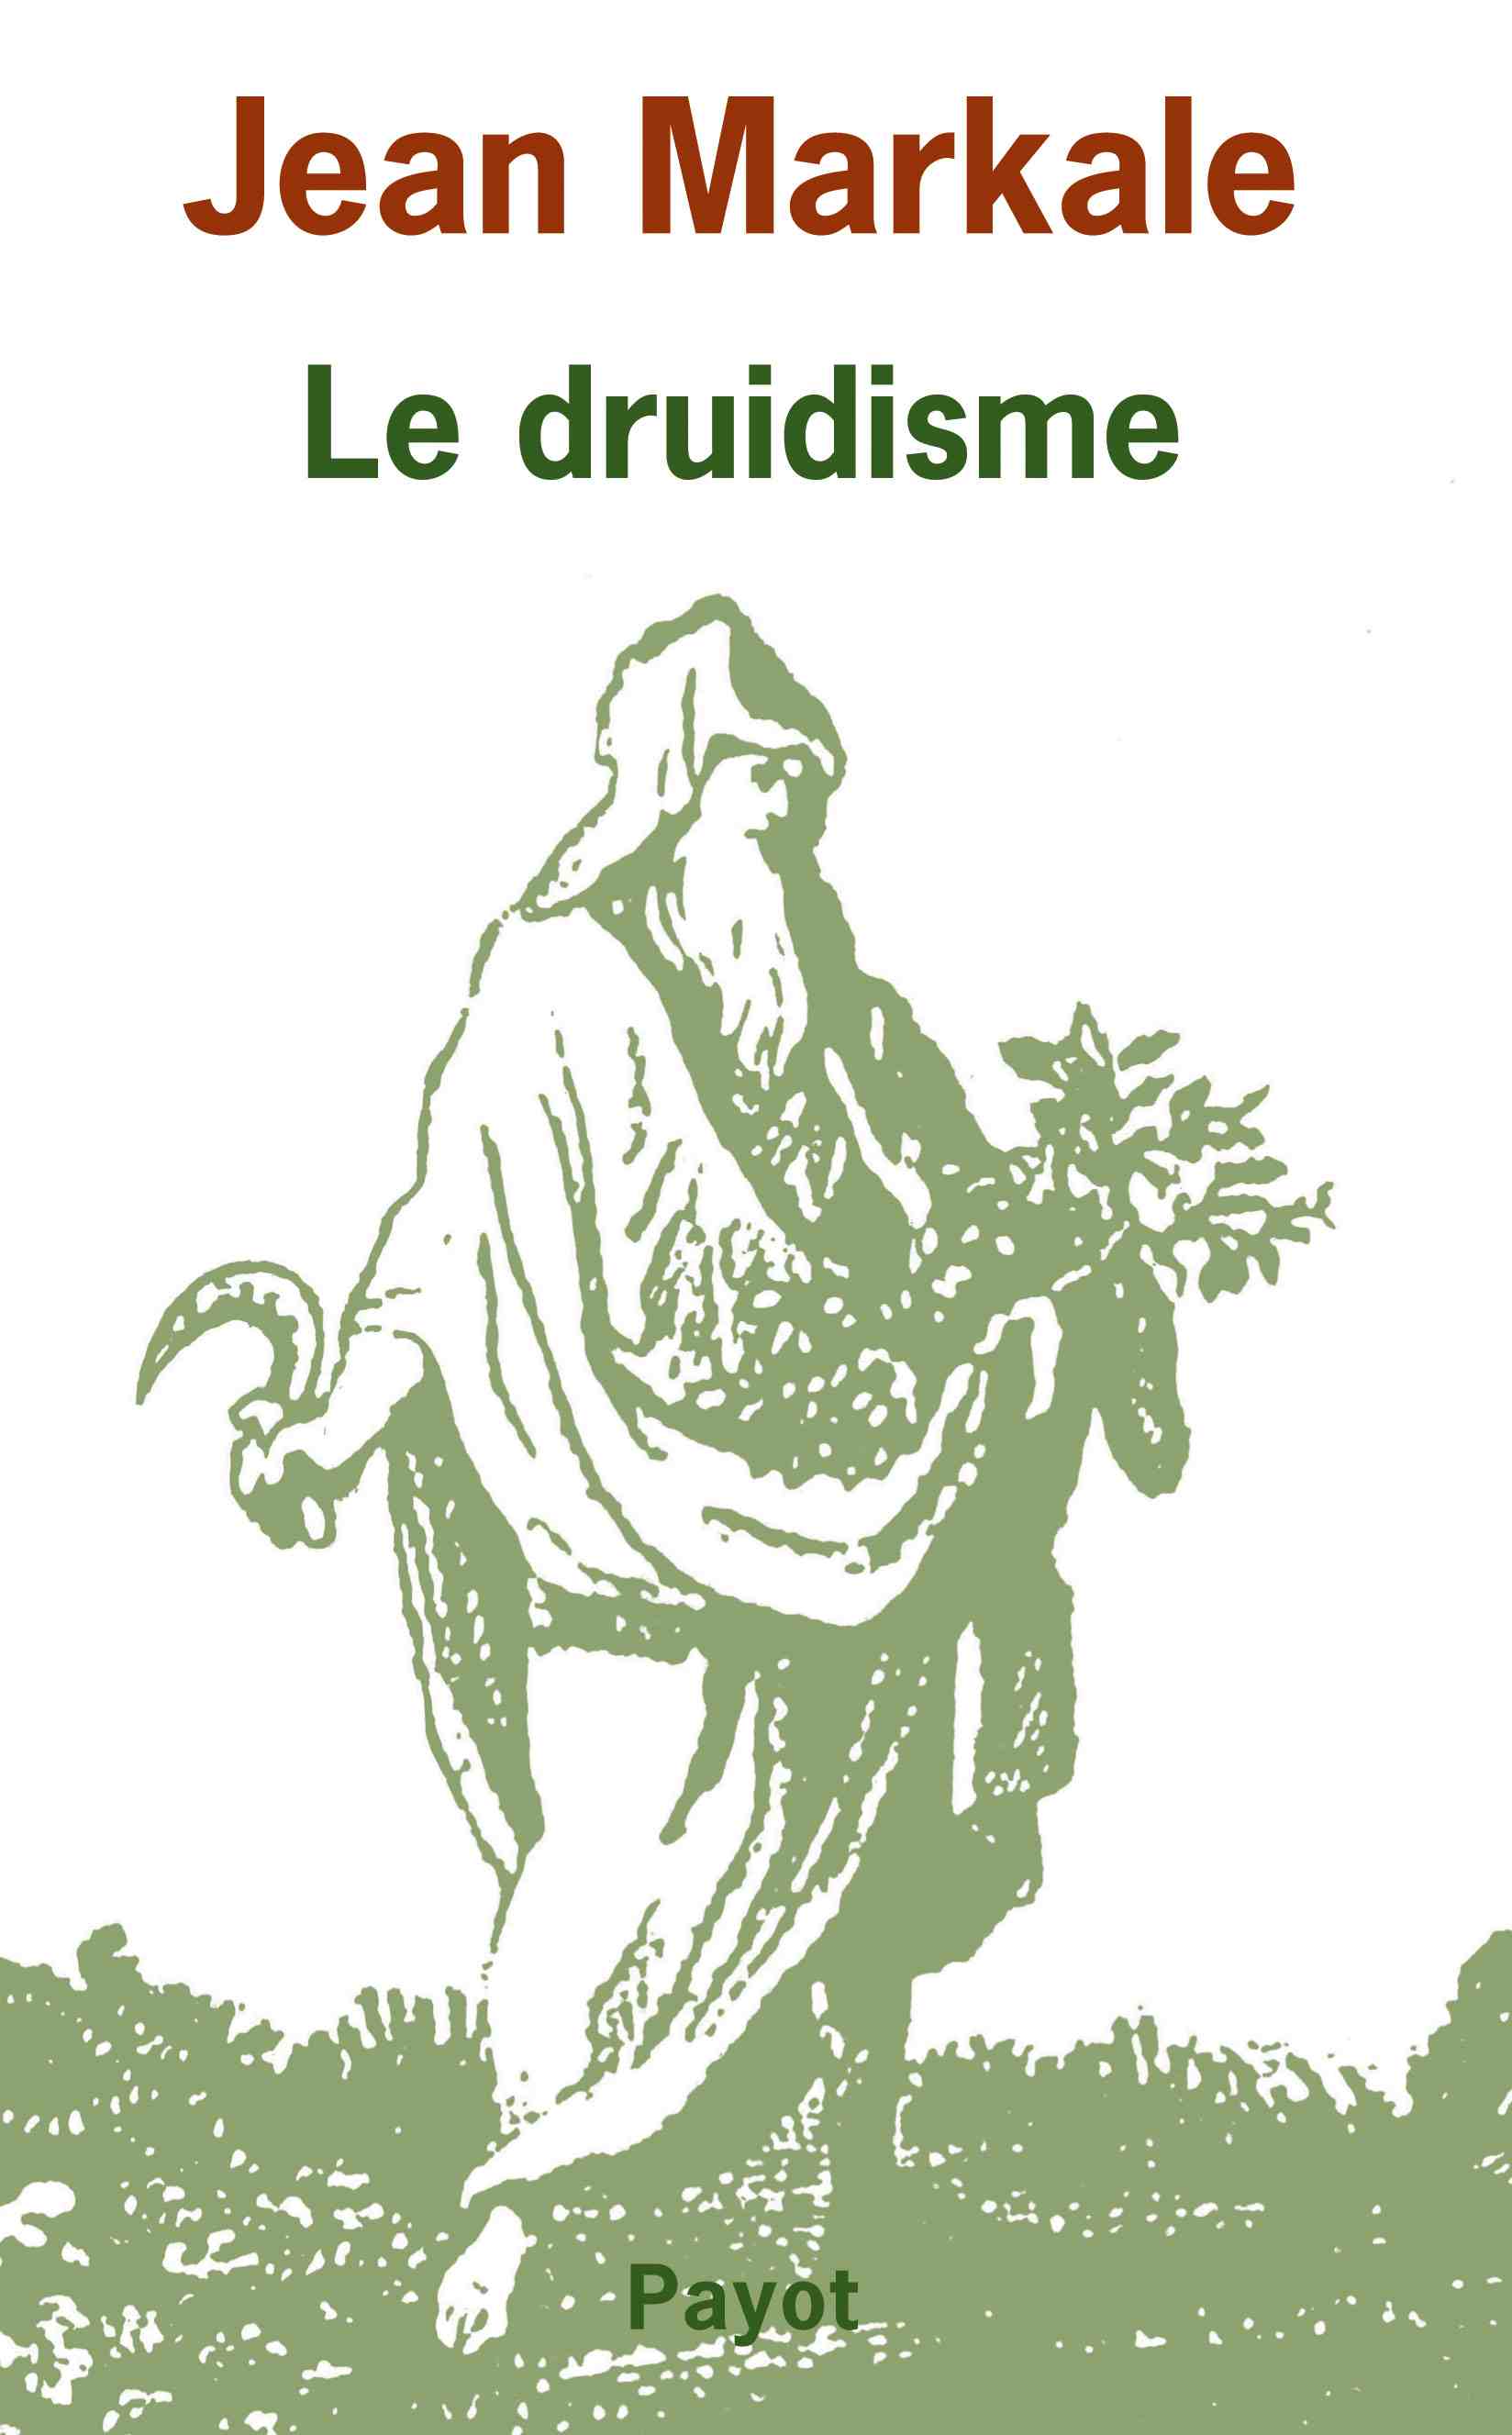 ÉPUISÉ - Le druidisme. Traditions et dieux des Celtes, 2007, 286 p.